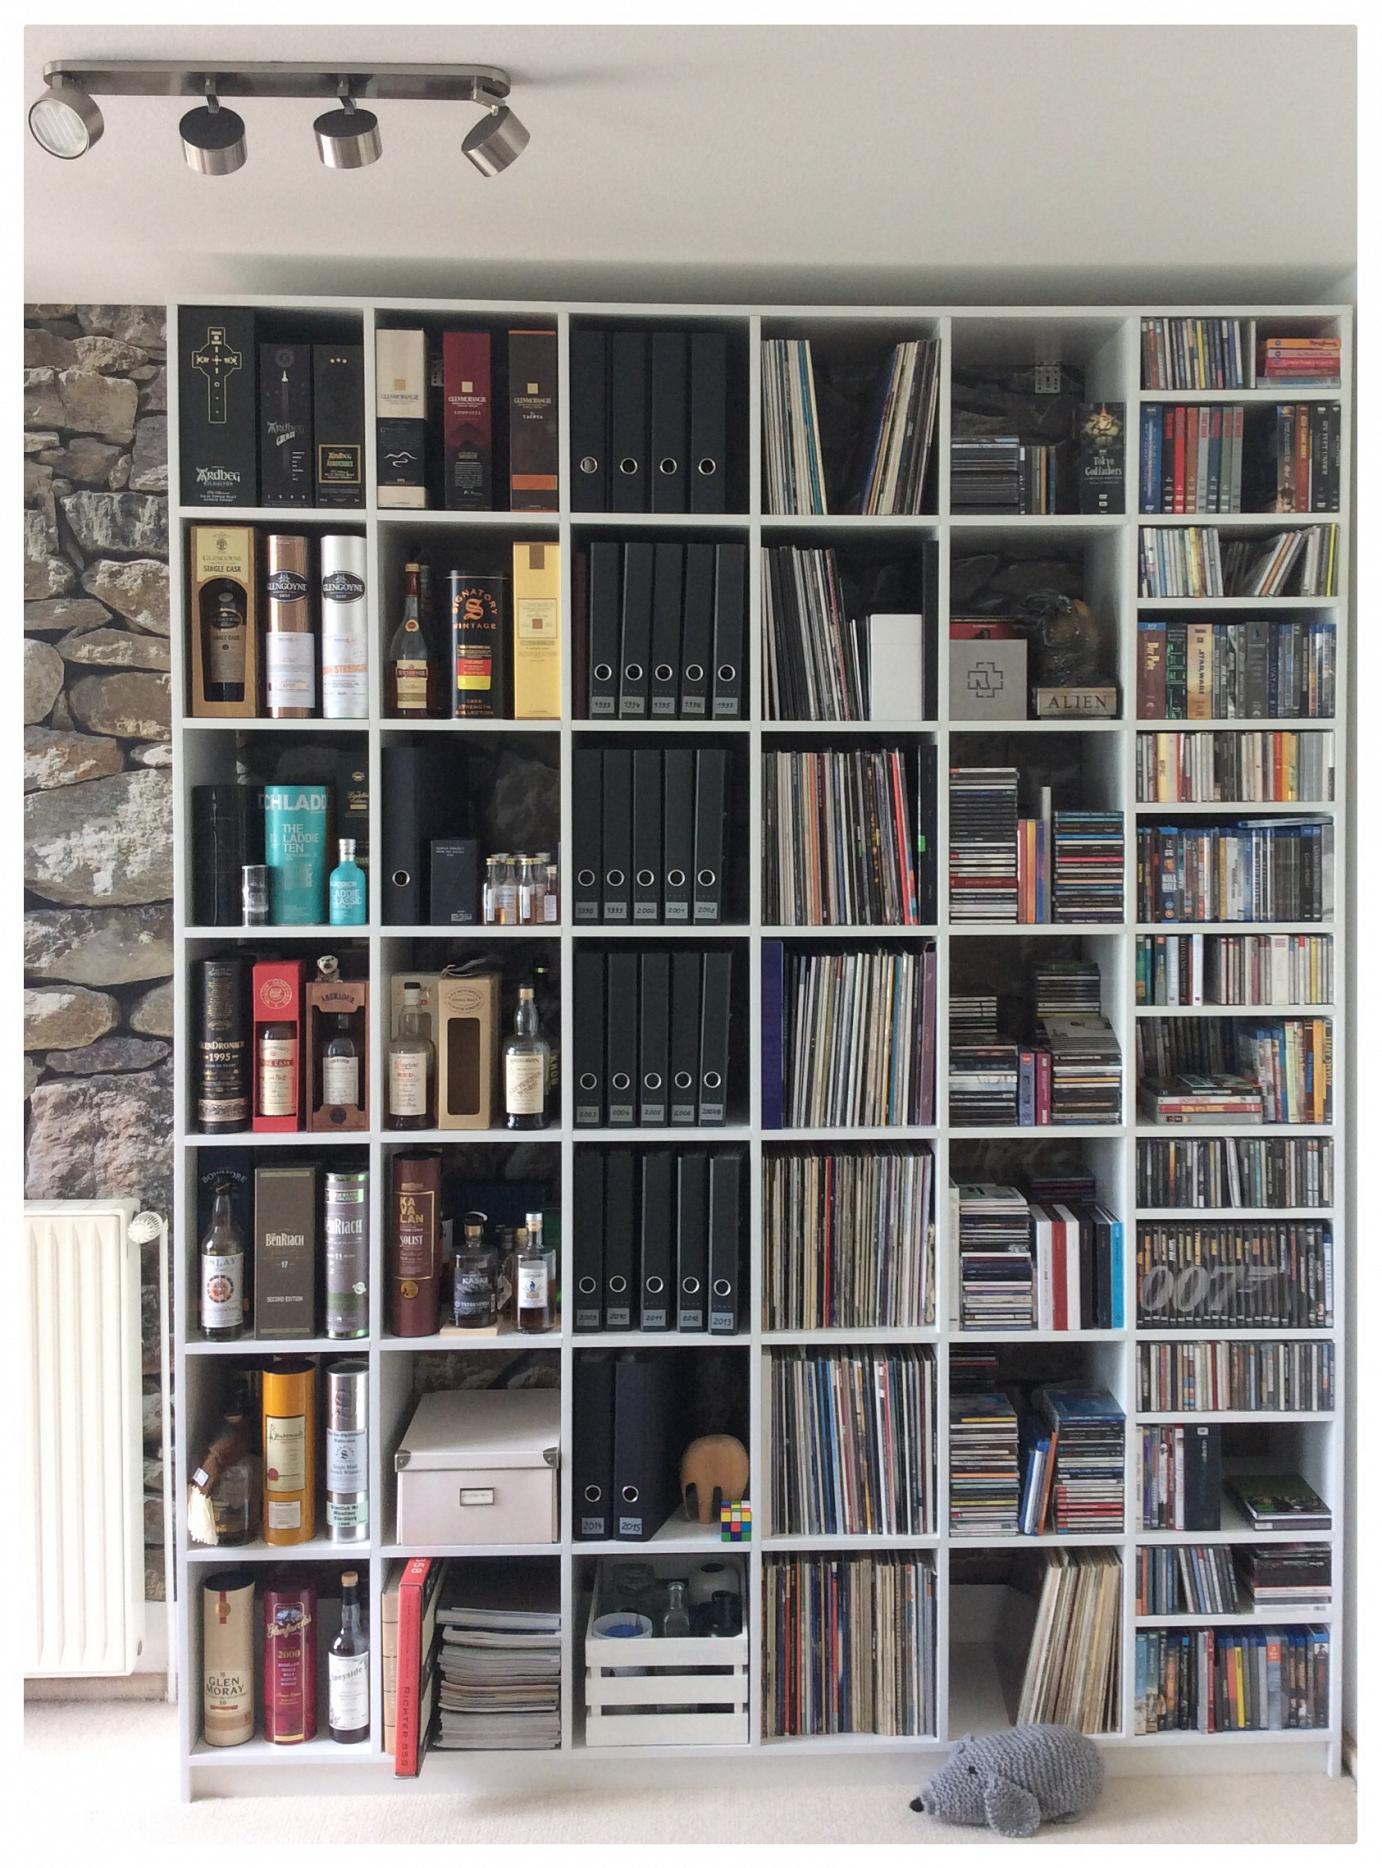 Wunderschönes Bücherregal aus MDF #regal #bücherregal #raumteiler ©Pickawood